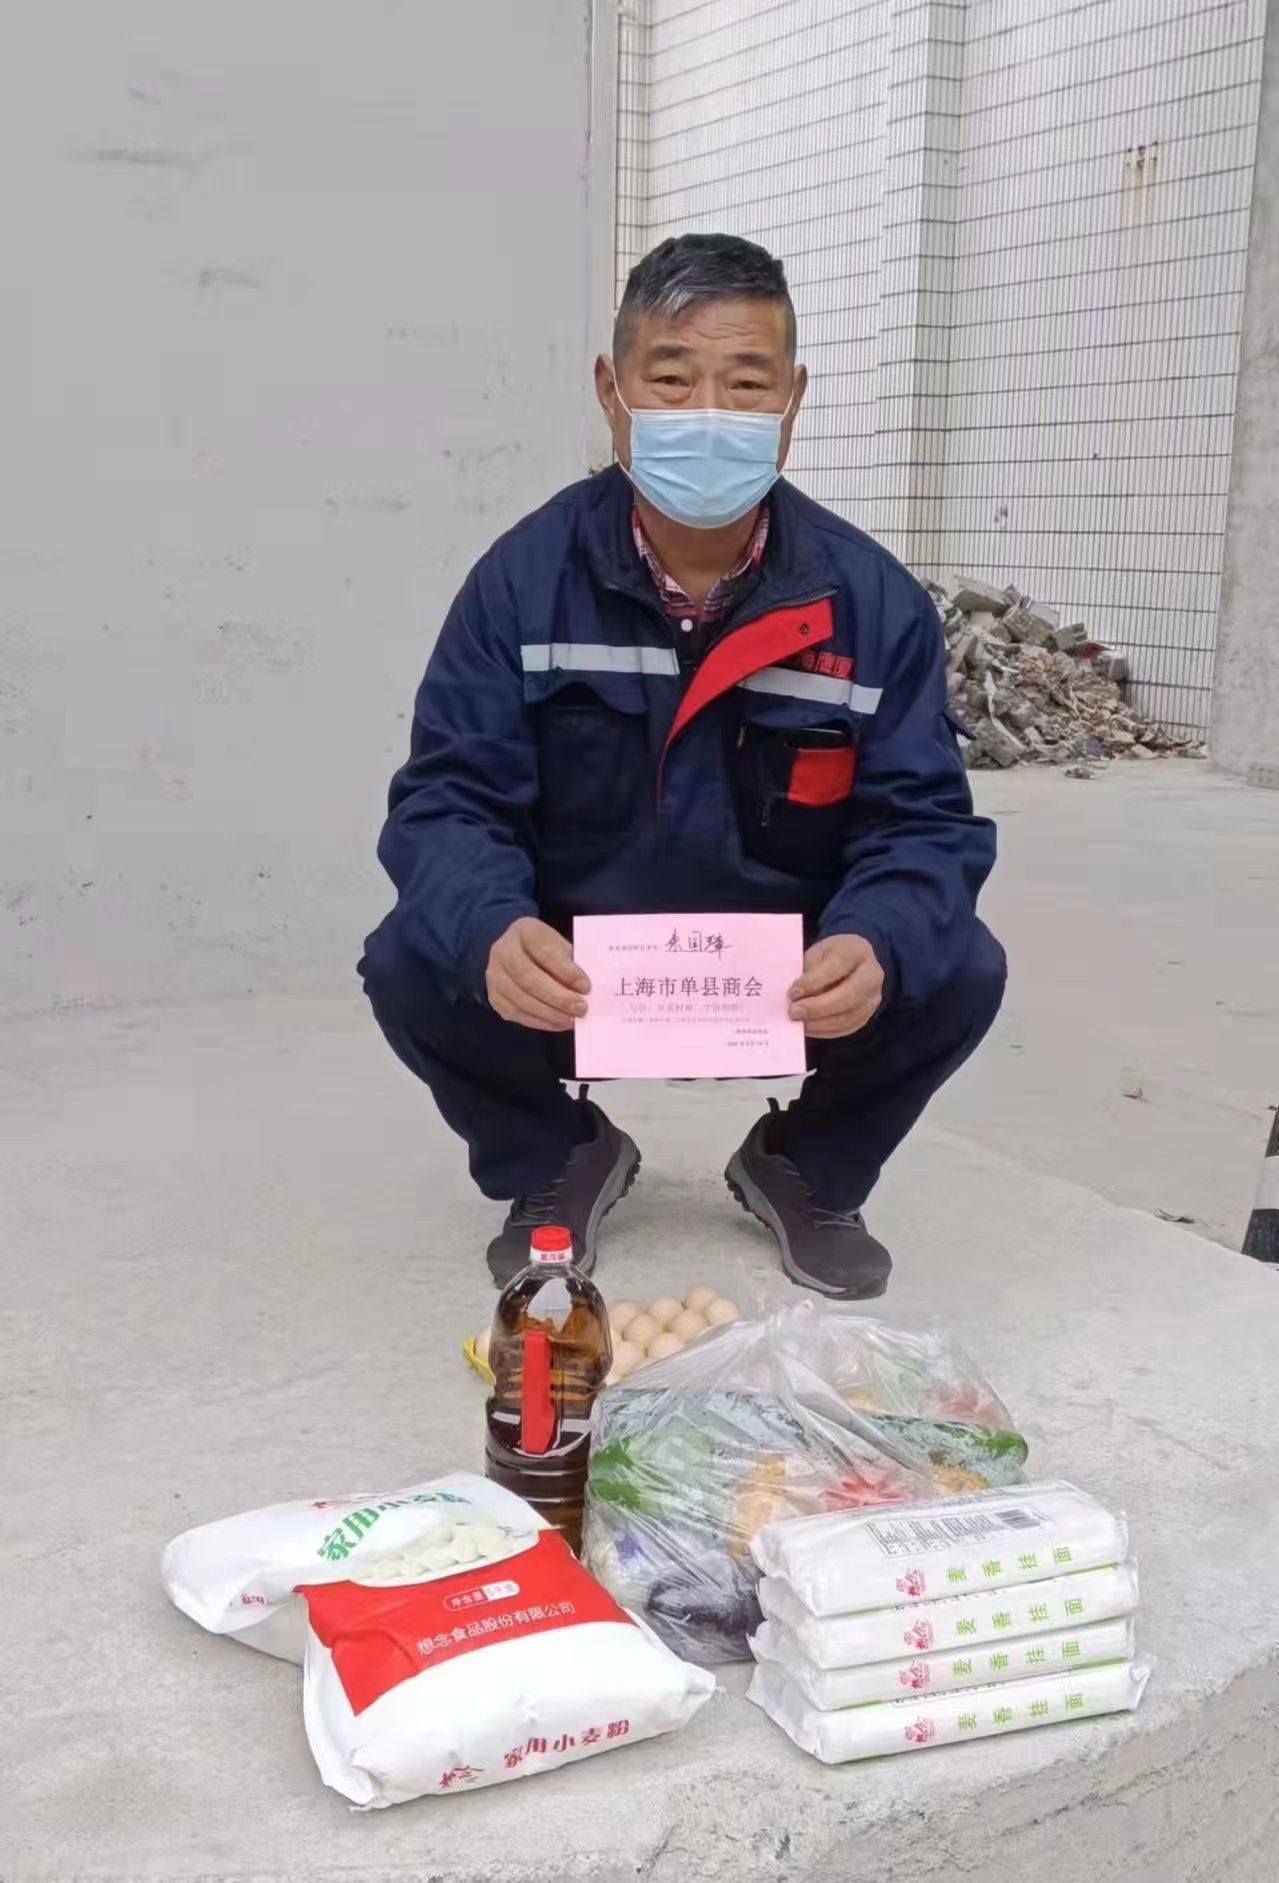 病毒无情 单商有爱——上海市单县商会救助在沪特困老乡活动